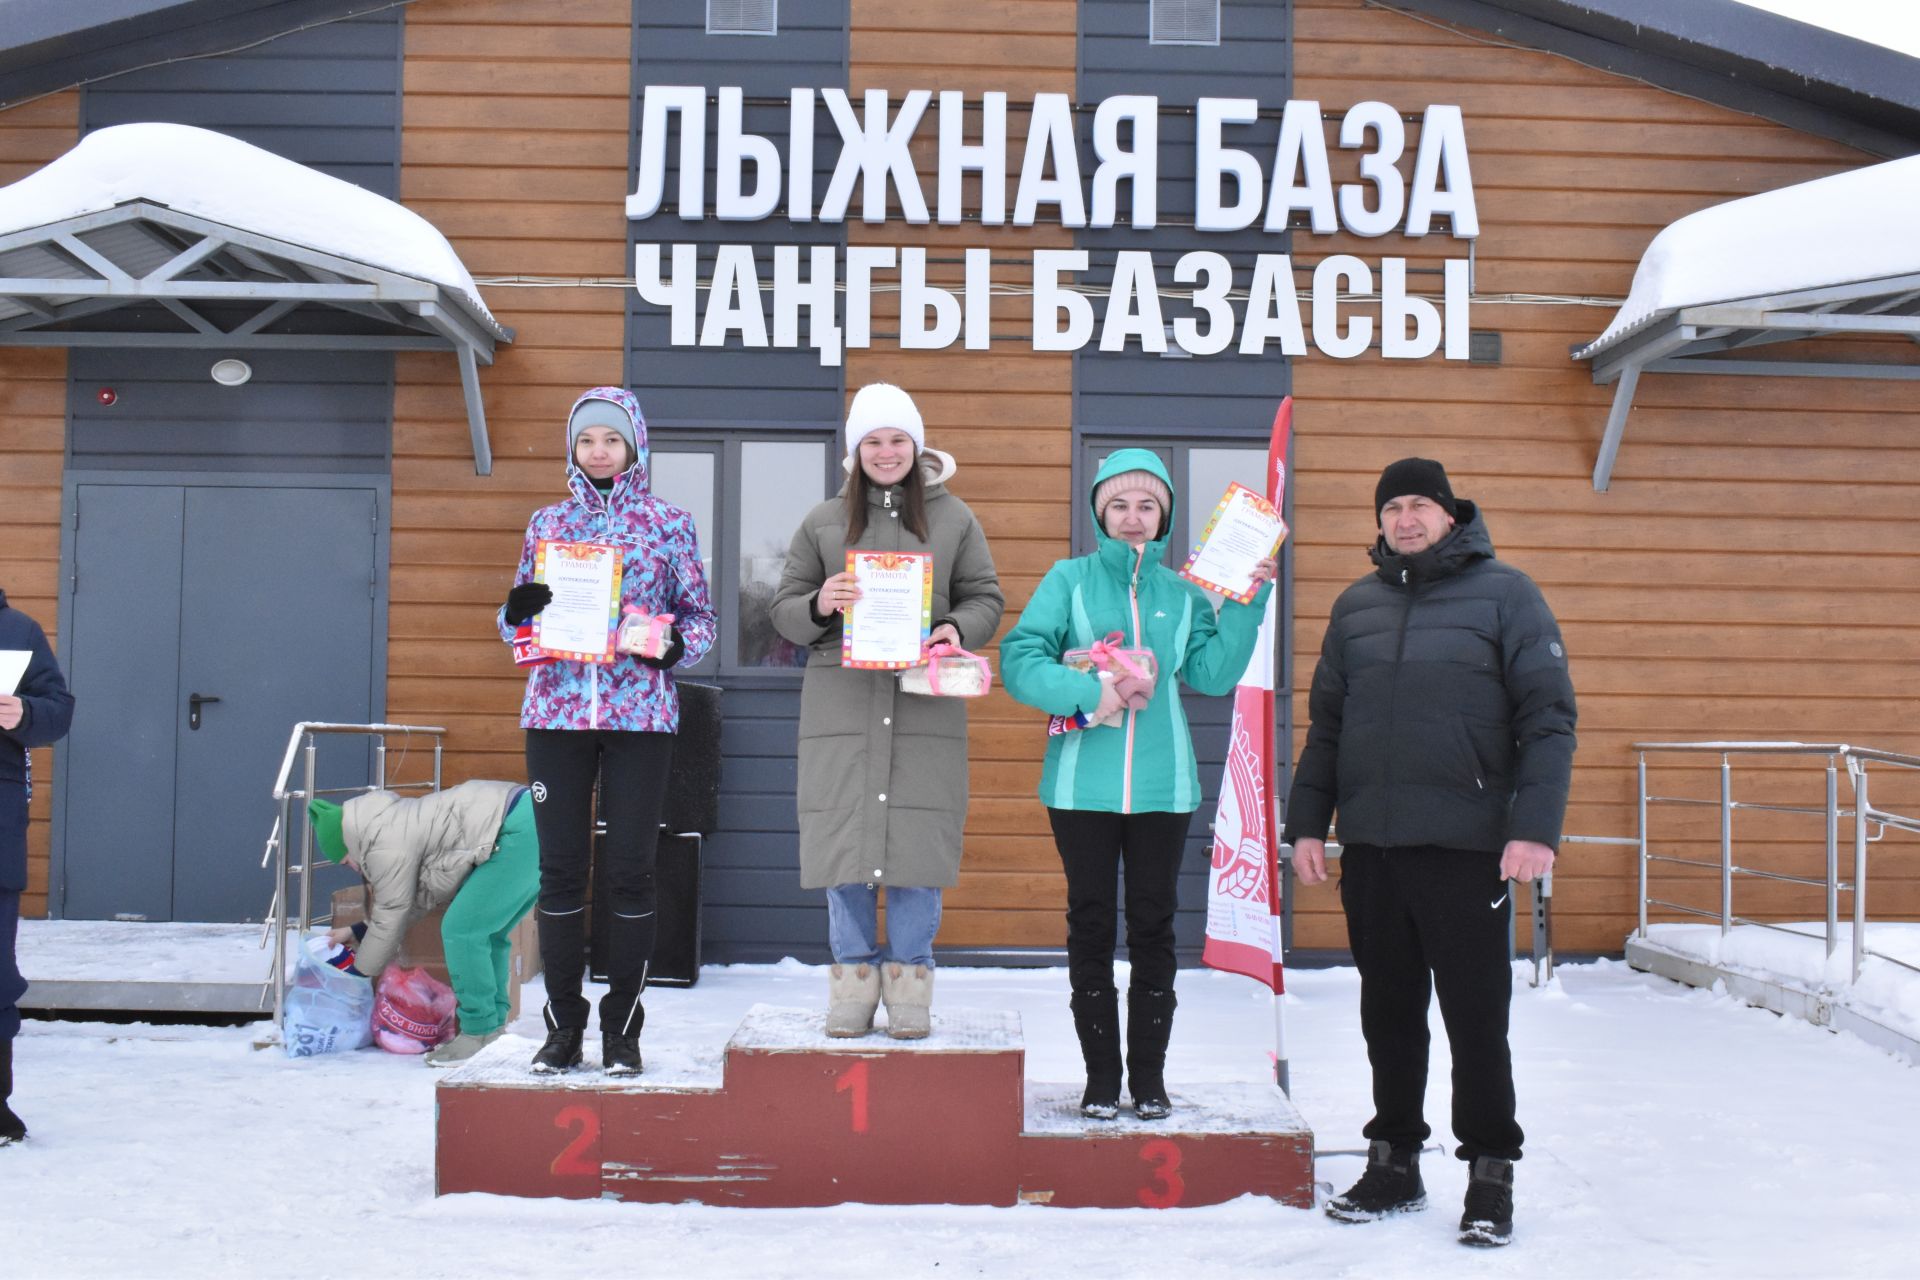 Около двухсот пятидесяти алексеевцев приняли участие в «Лыжне России»